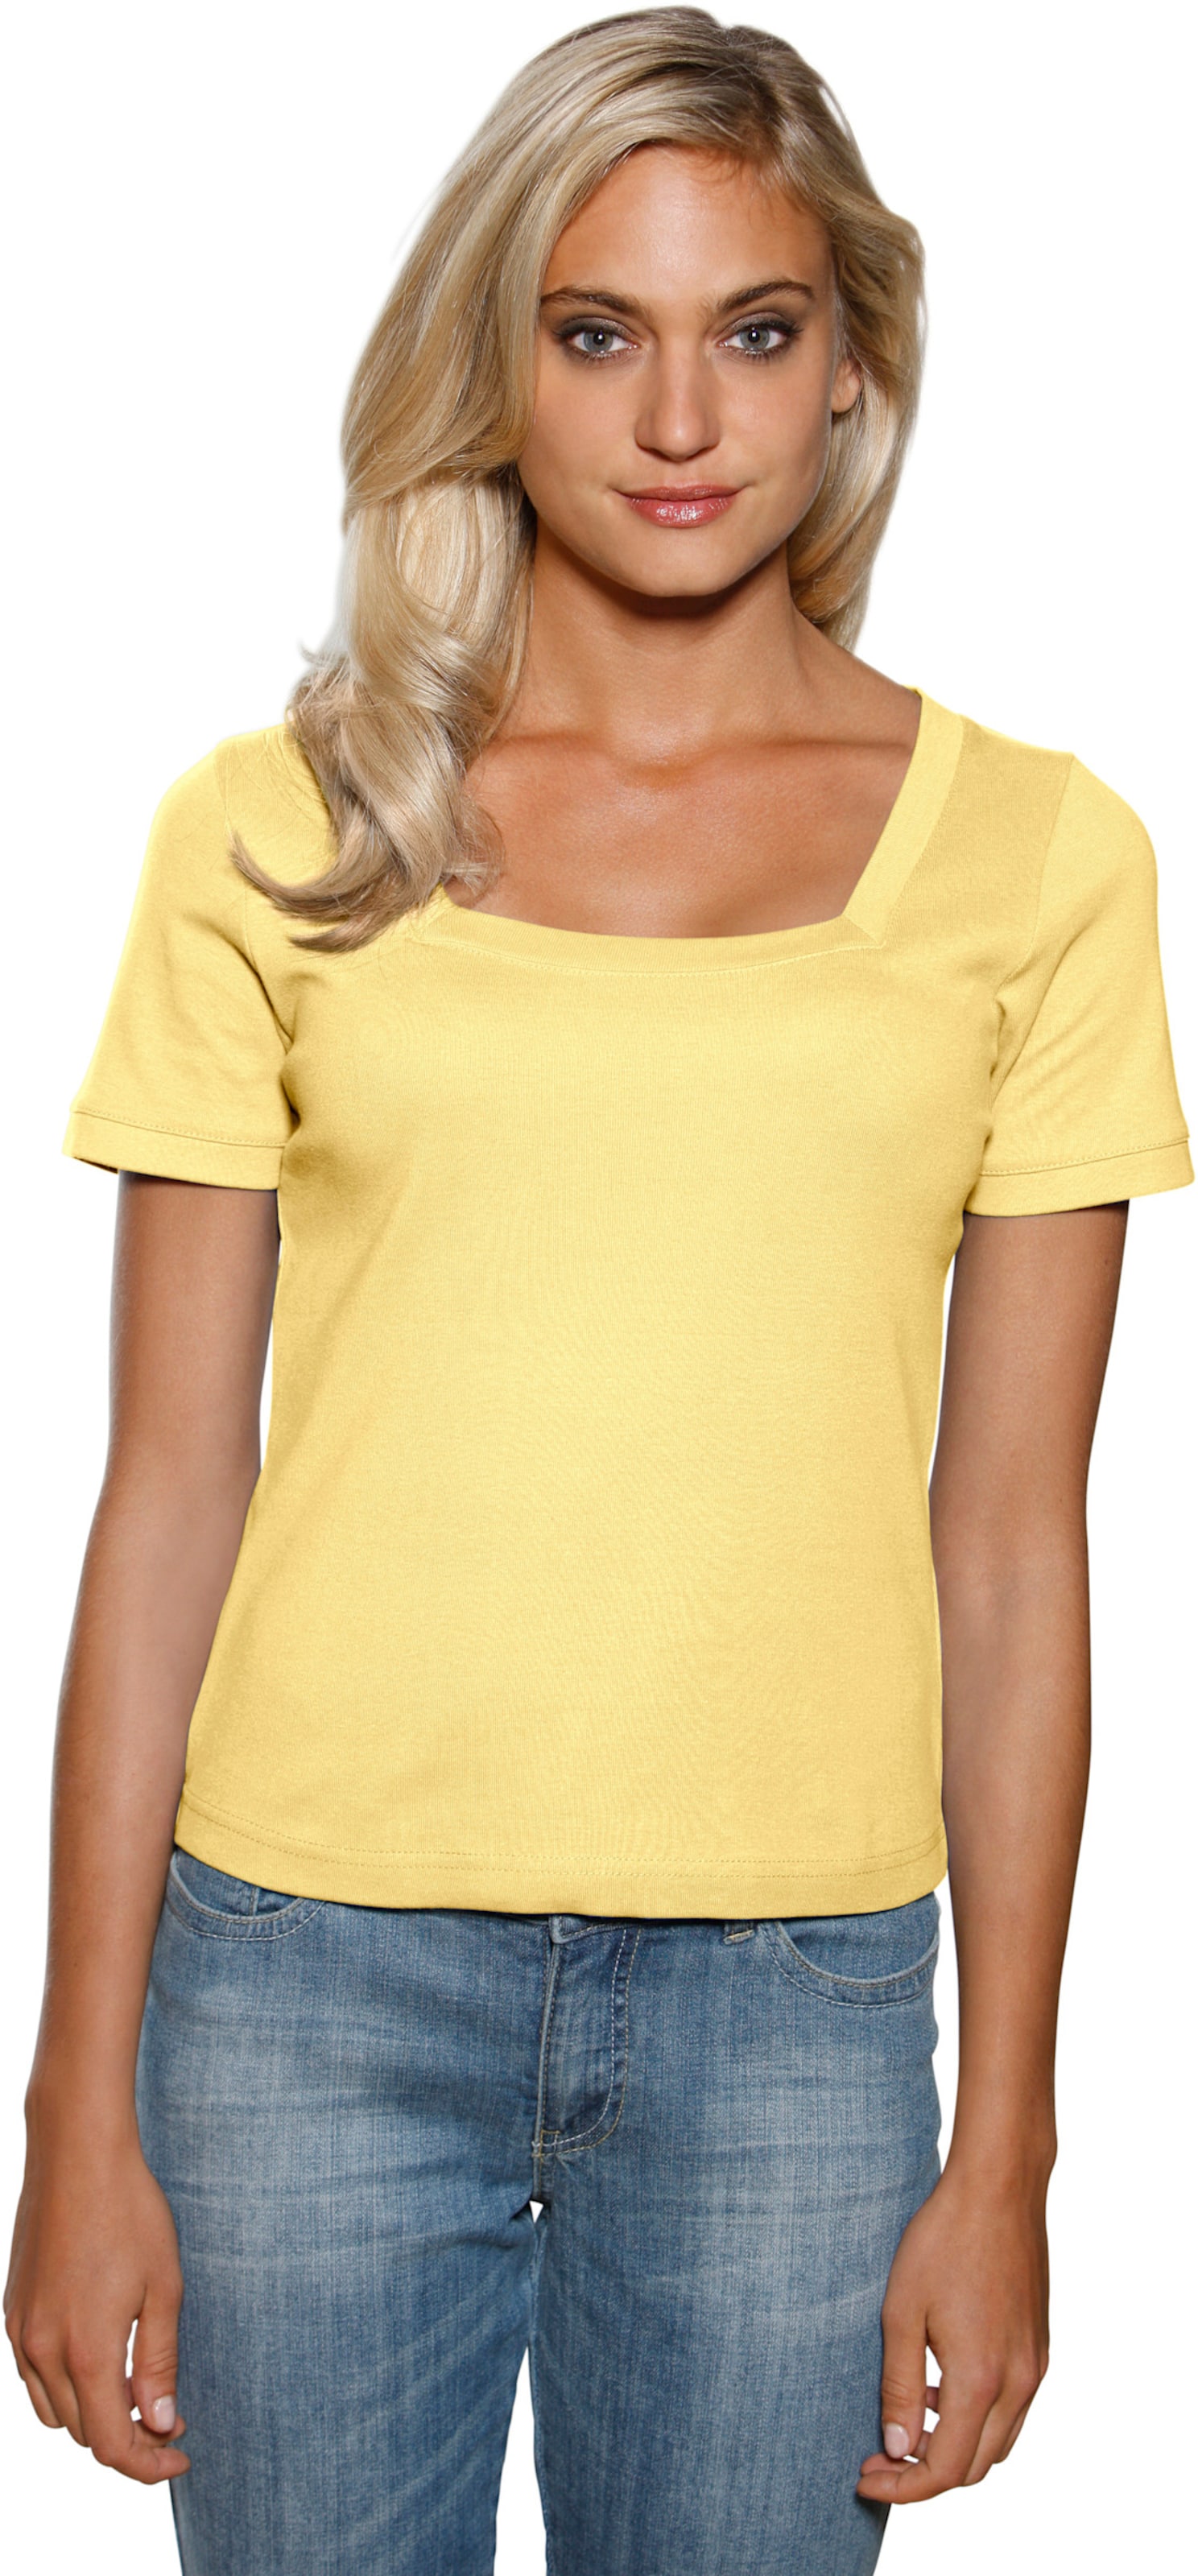 Witt Damen Carré-Shirt, gelb